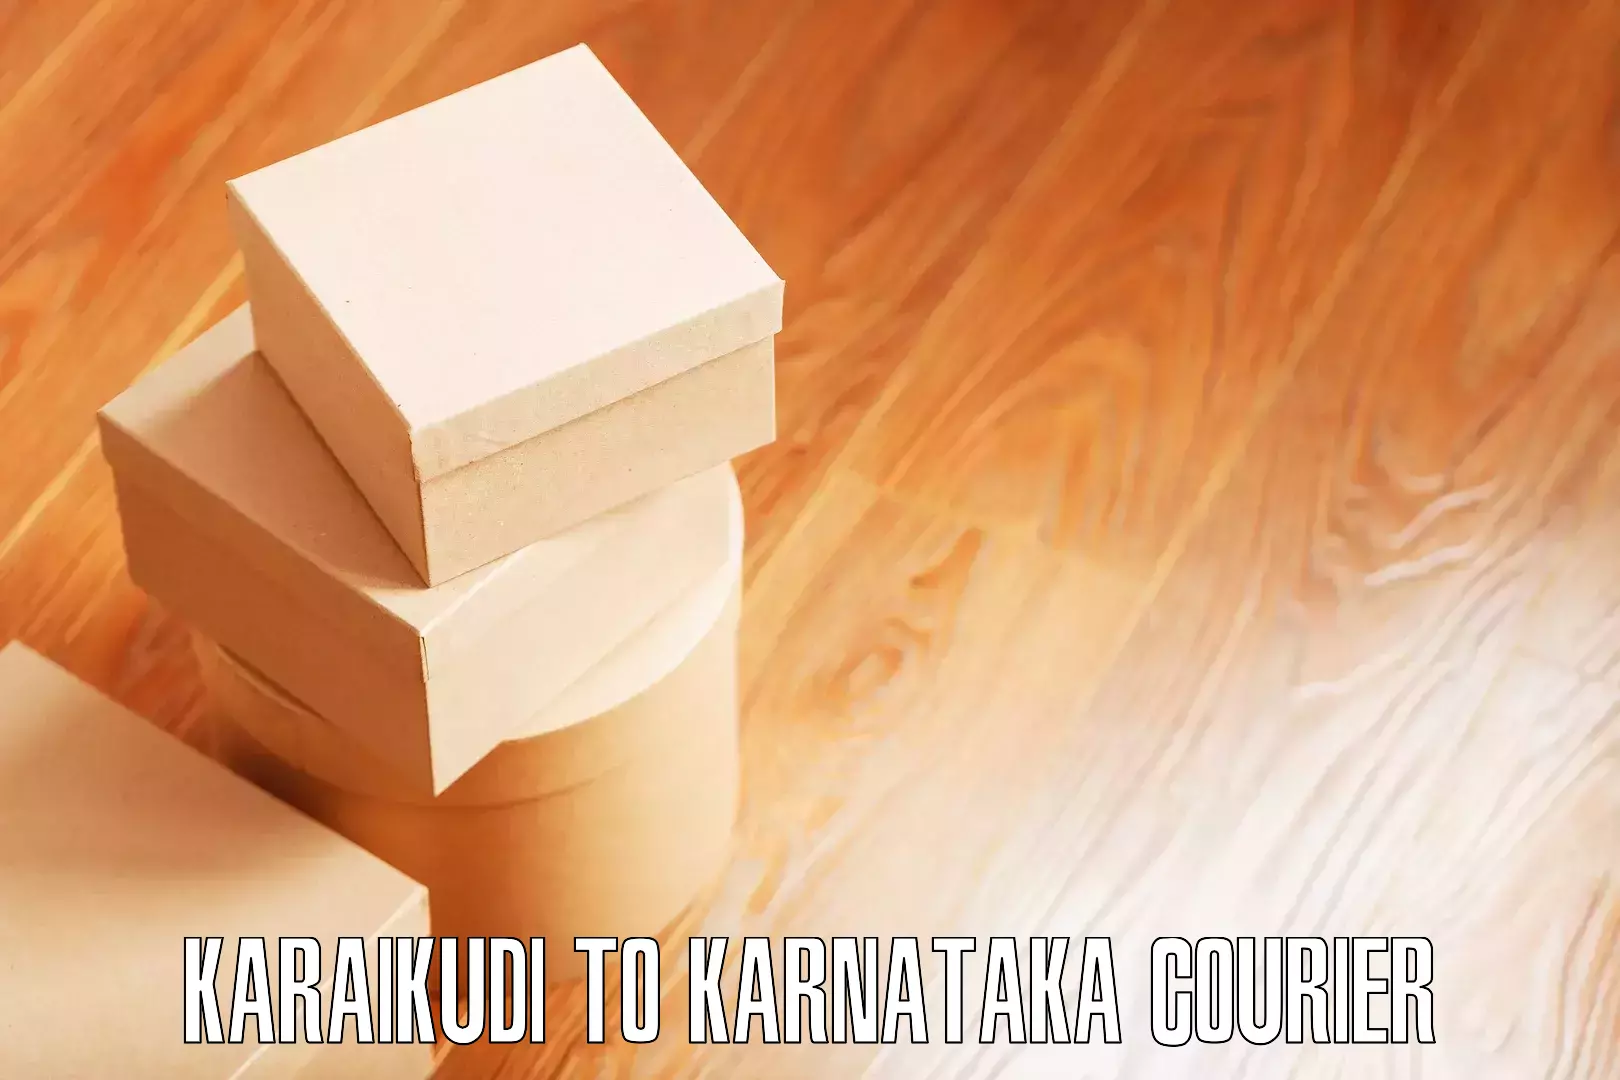 Furniture moving experts Karaikudi to Kollegal